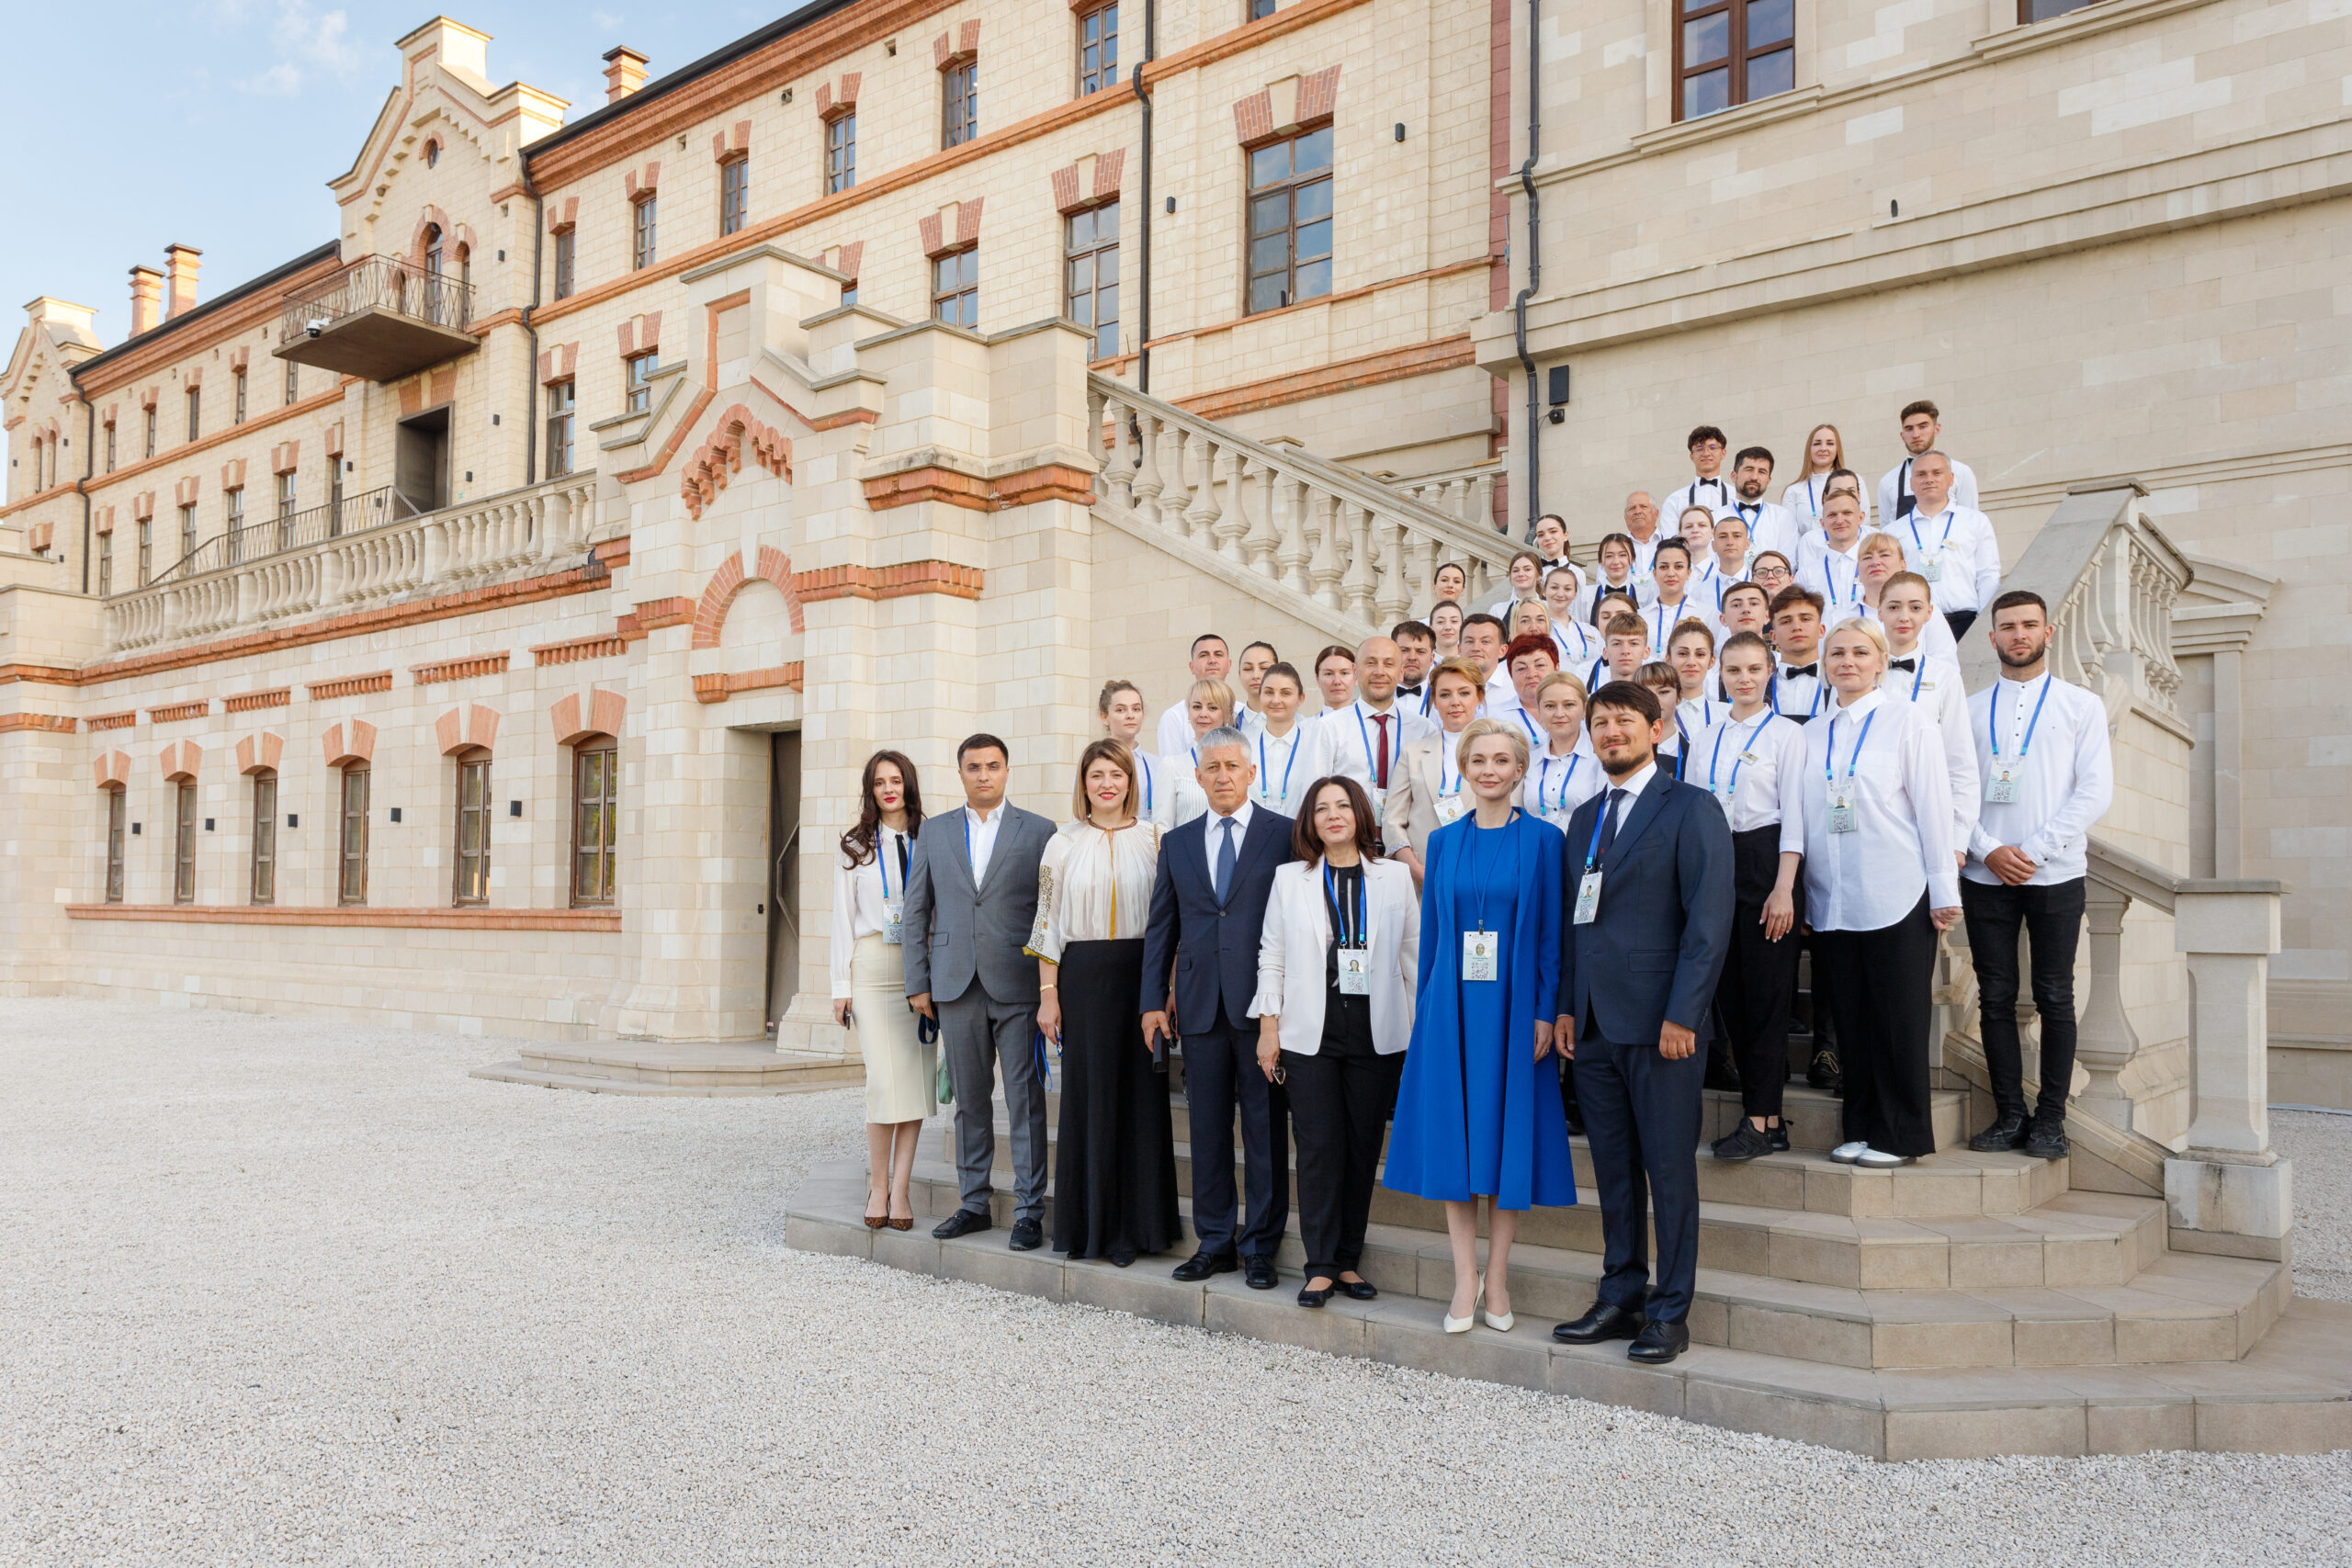 Președinta Republicii Moldova, Maia Sandu, a oferit o mențiune specială echipei Castel Mimi pentru organizarea impecabilă a Summit-ului Comunității Politice Europene